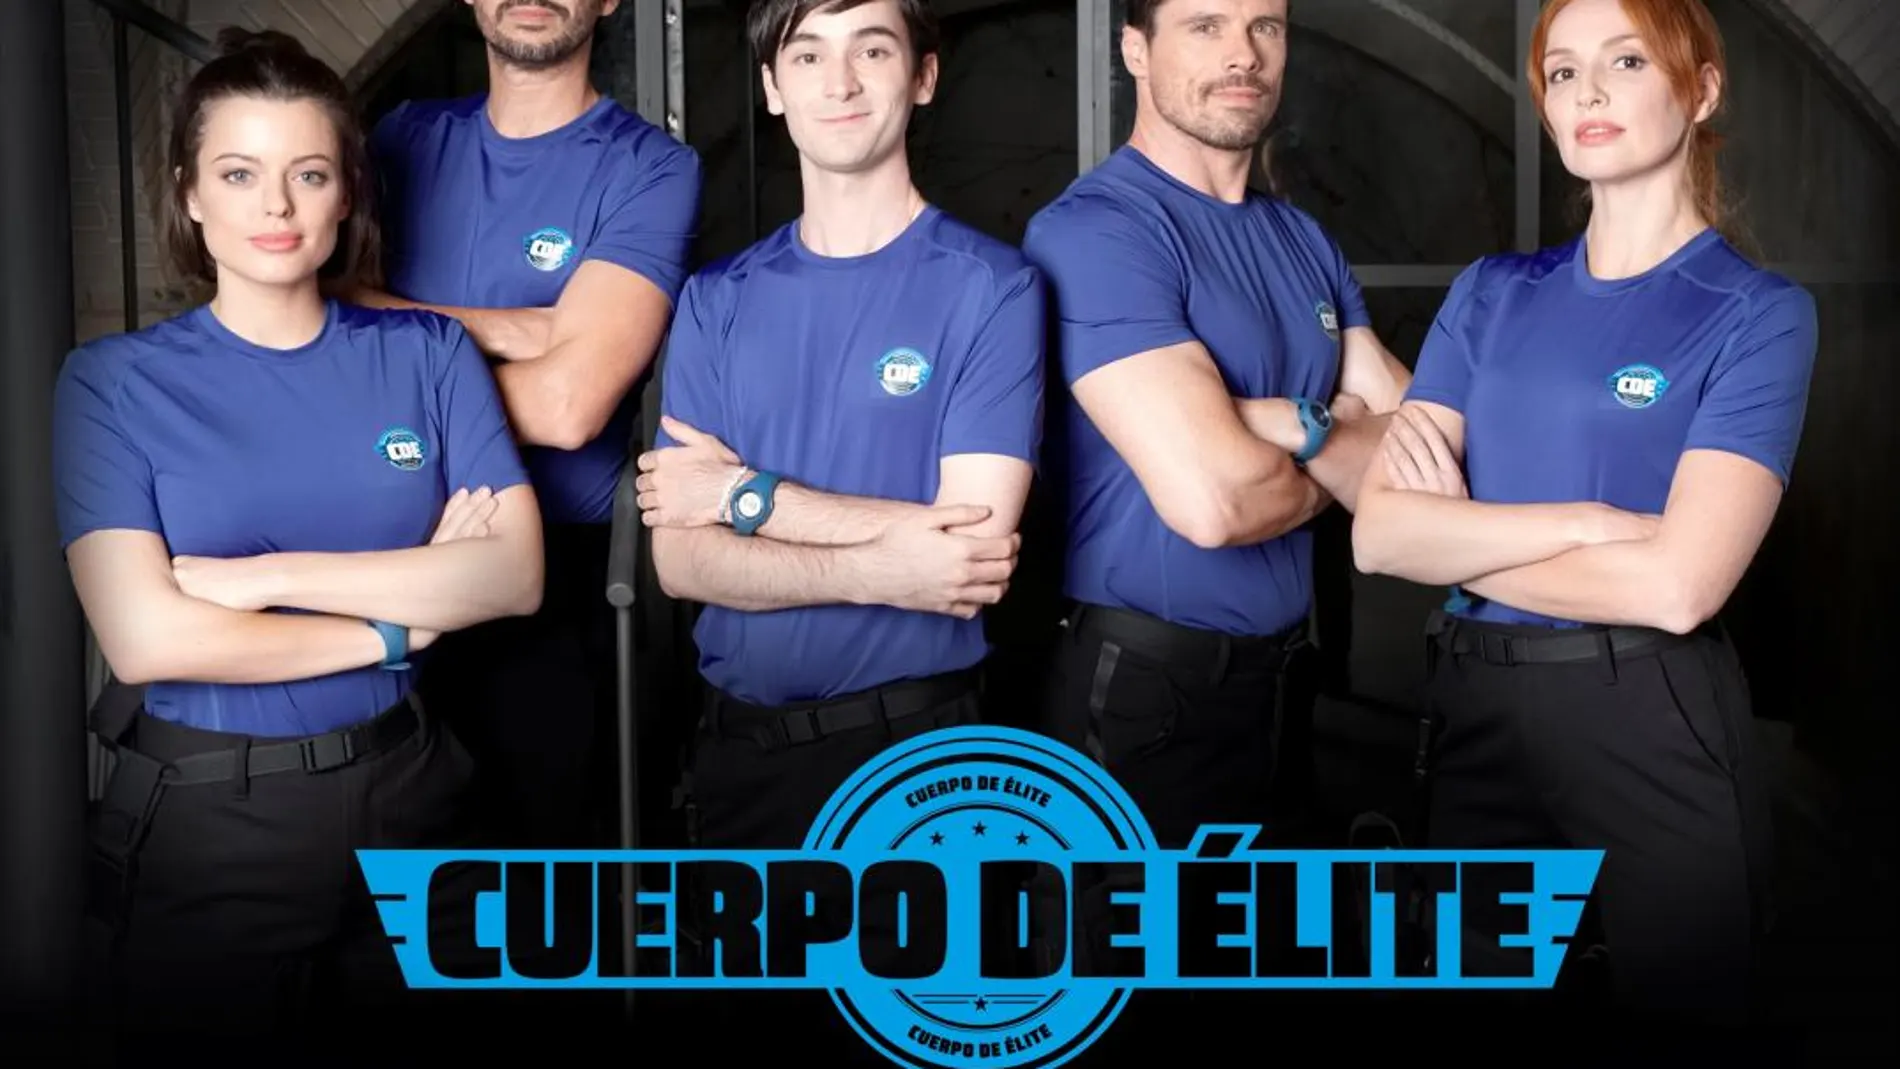 Atresmedia Televisión lanza el primer teaser de su nueva serie original, ‘Cuerpo de élite’